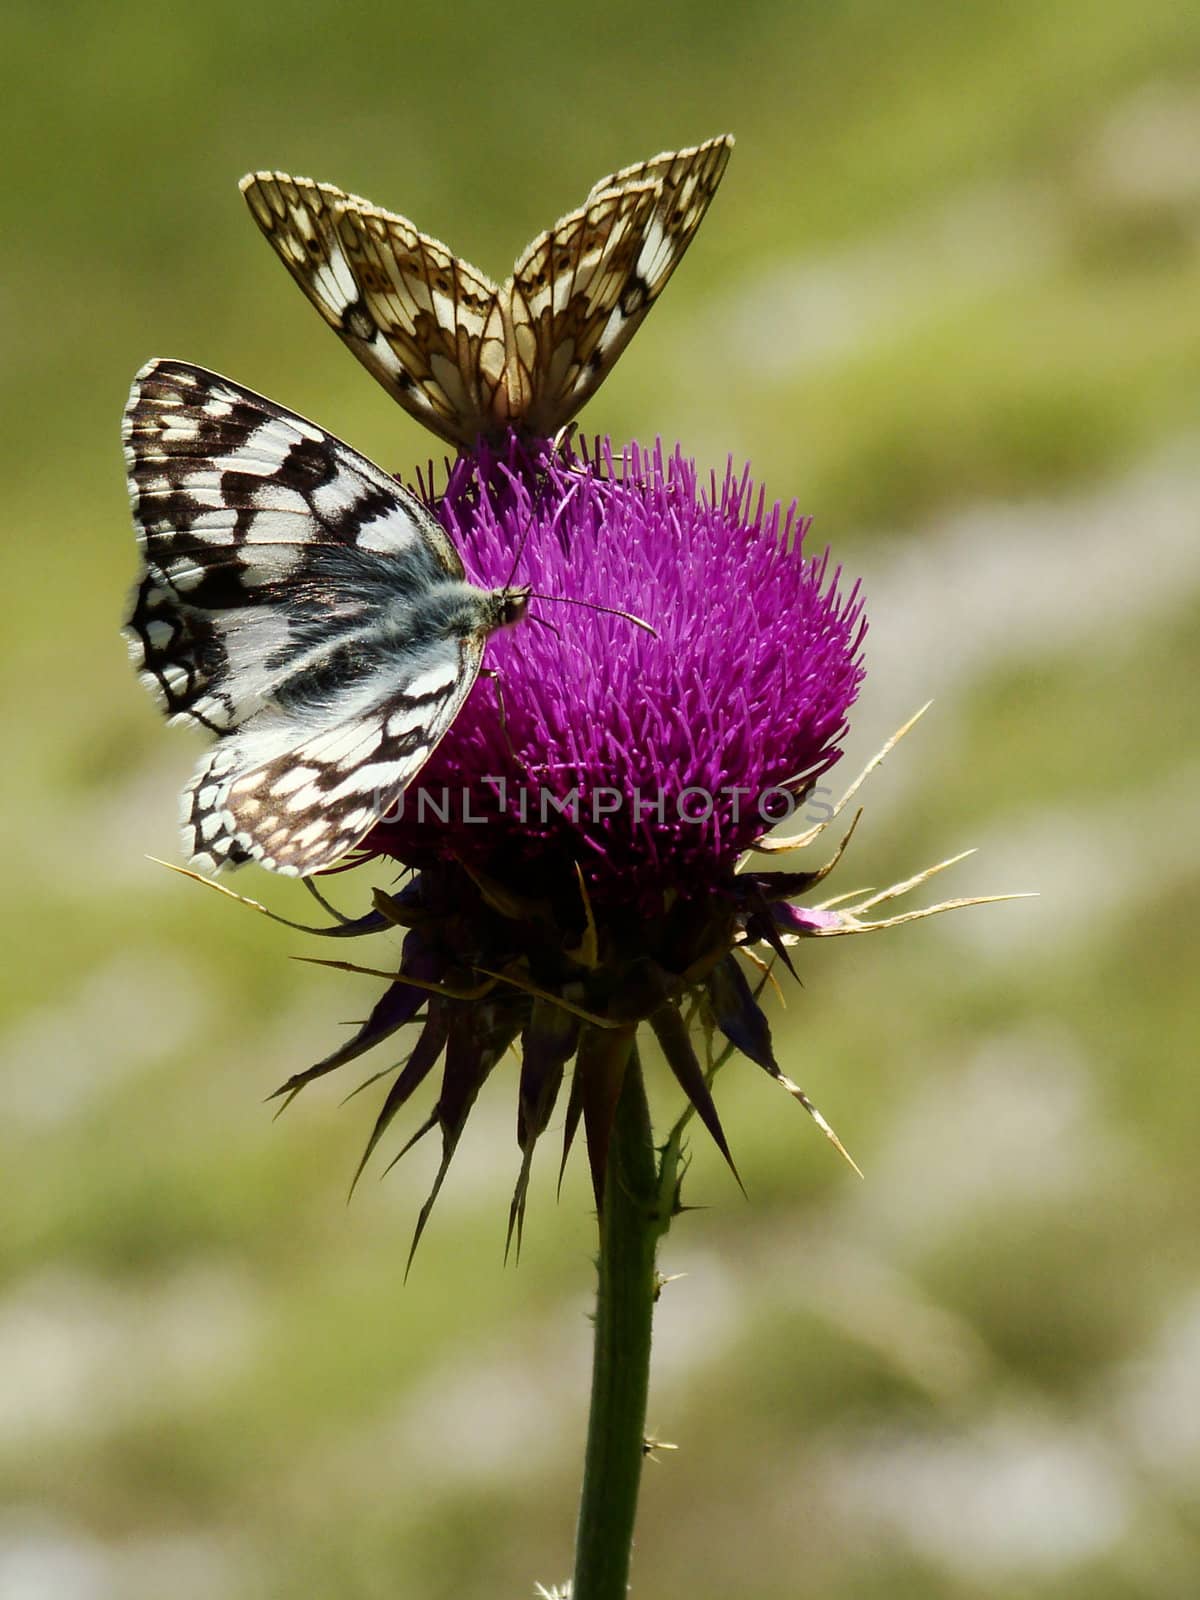 Butterflies On Flower
Butterflies on wildflower meadow in central Italy. VII 2007